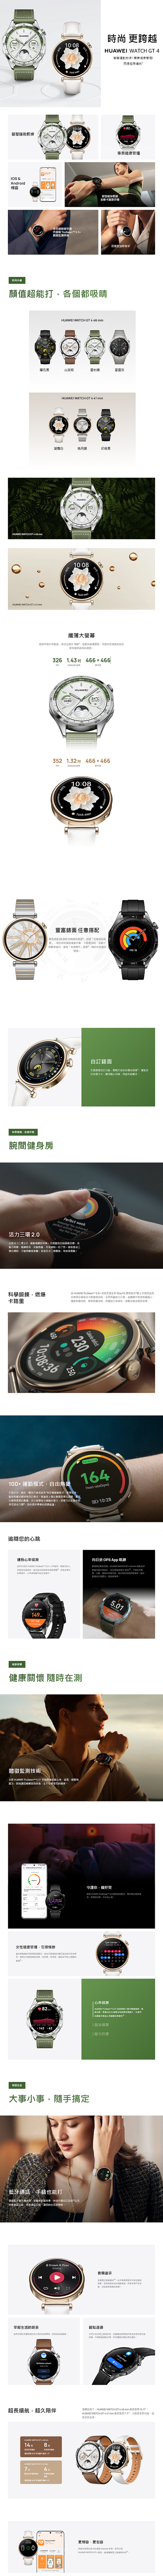 Huawei Watch GT4 41mm